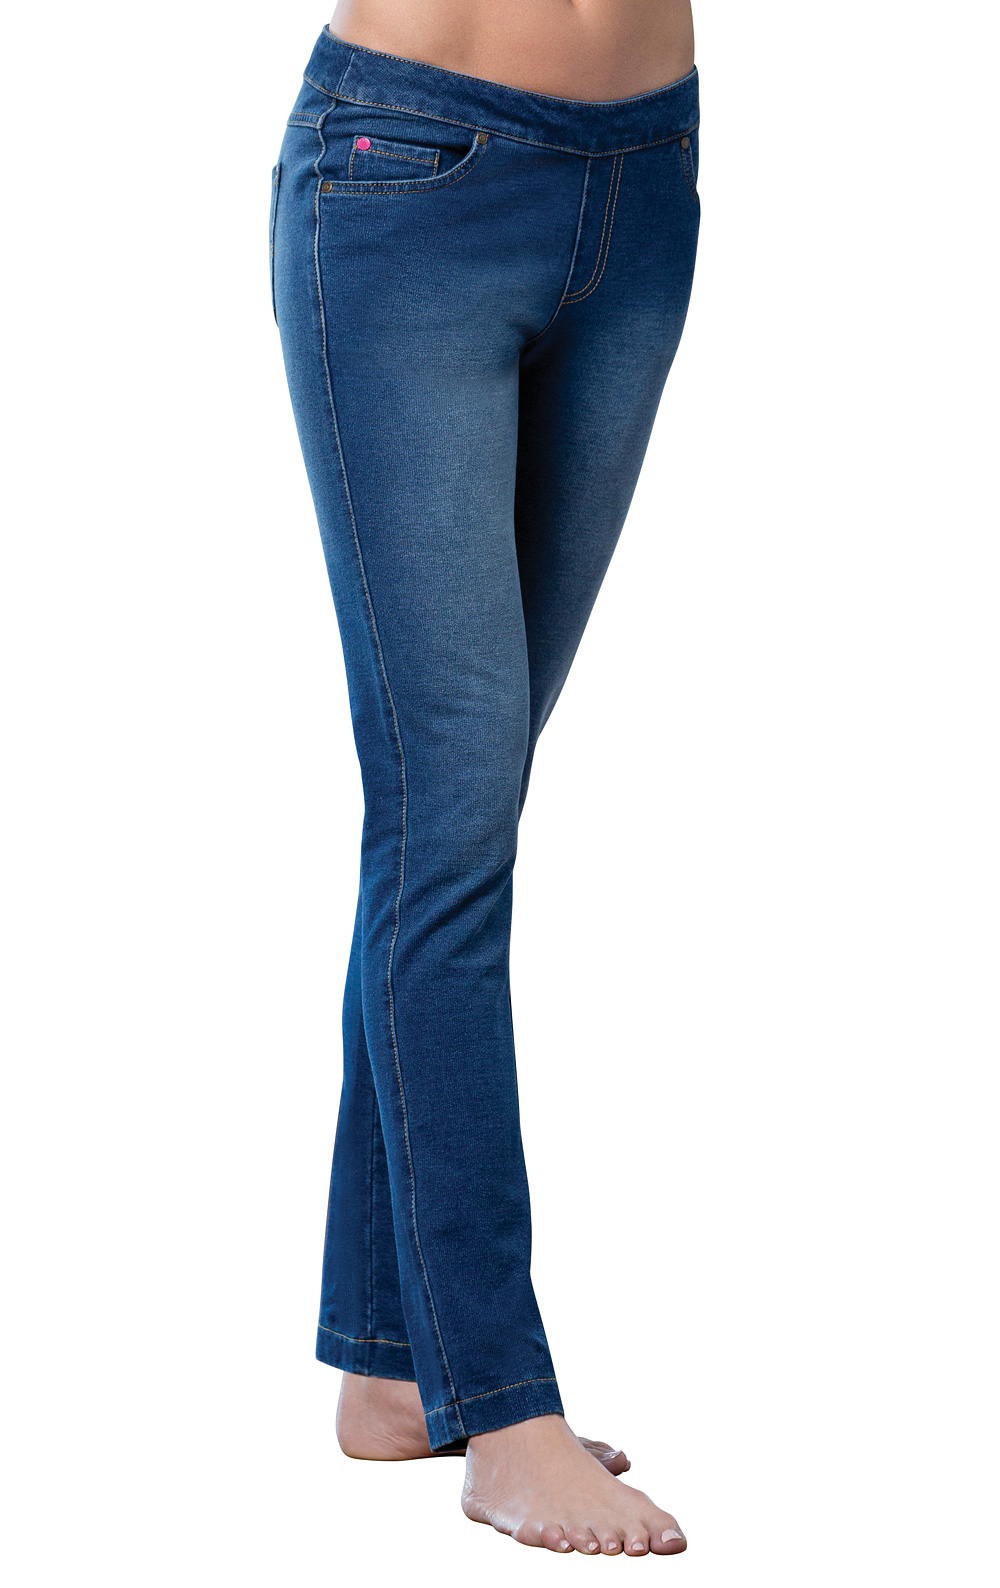 PajamaJeans Womens Skinny Stretch Knit Denim Jeans 